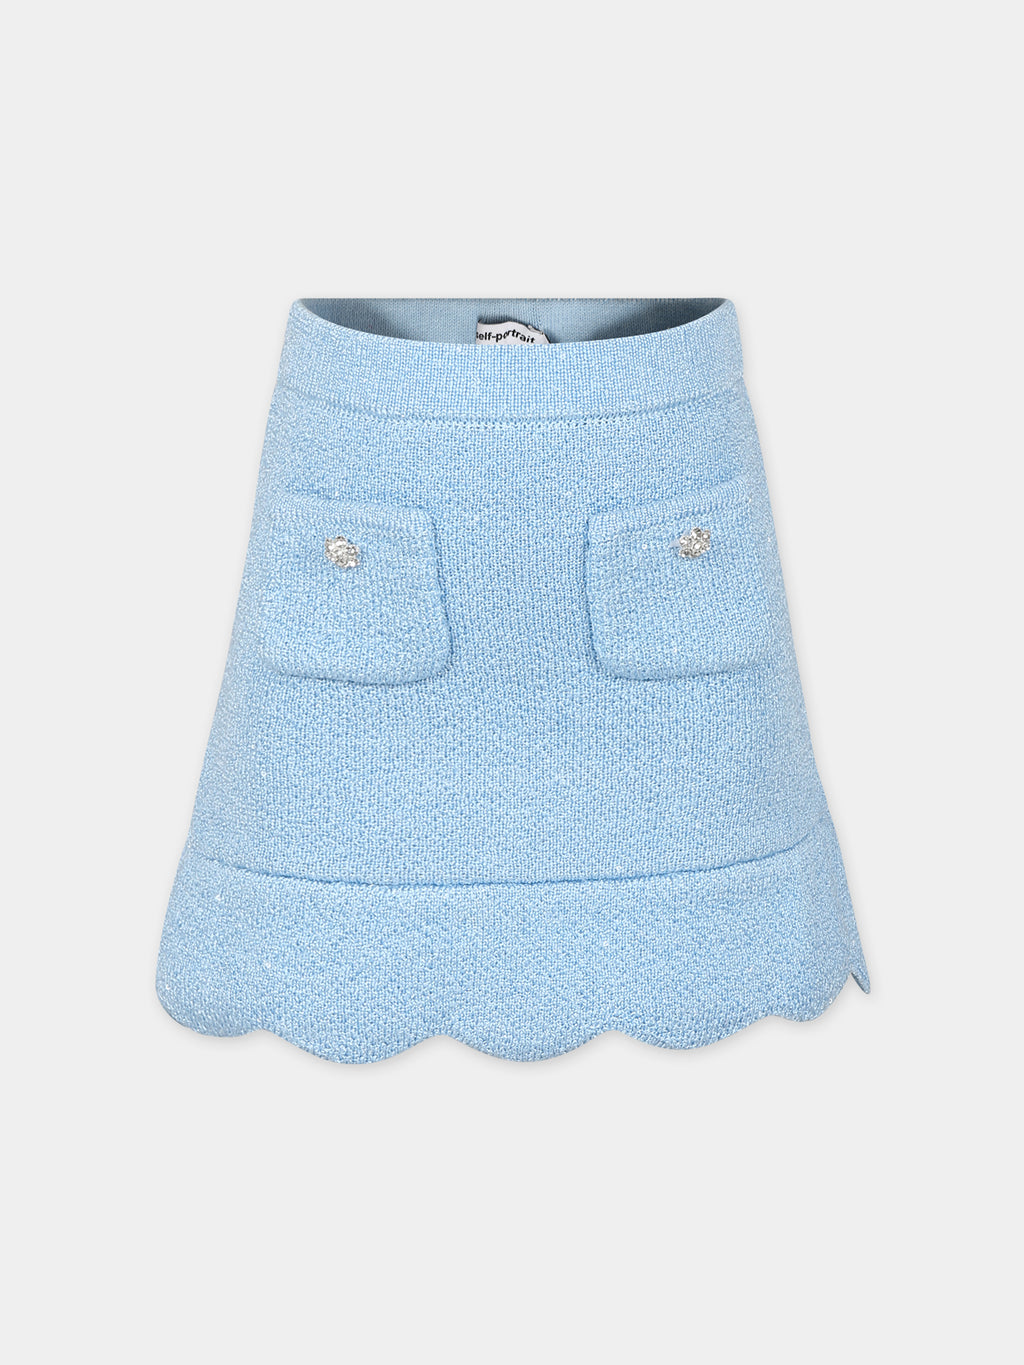 Jupe élégante tricotée céleste pour fille avec paillettes